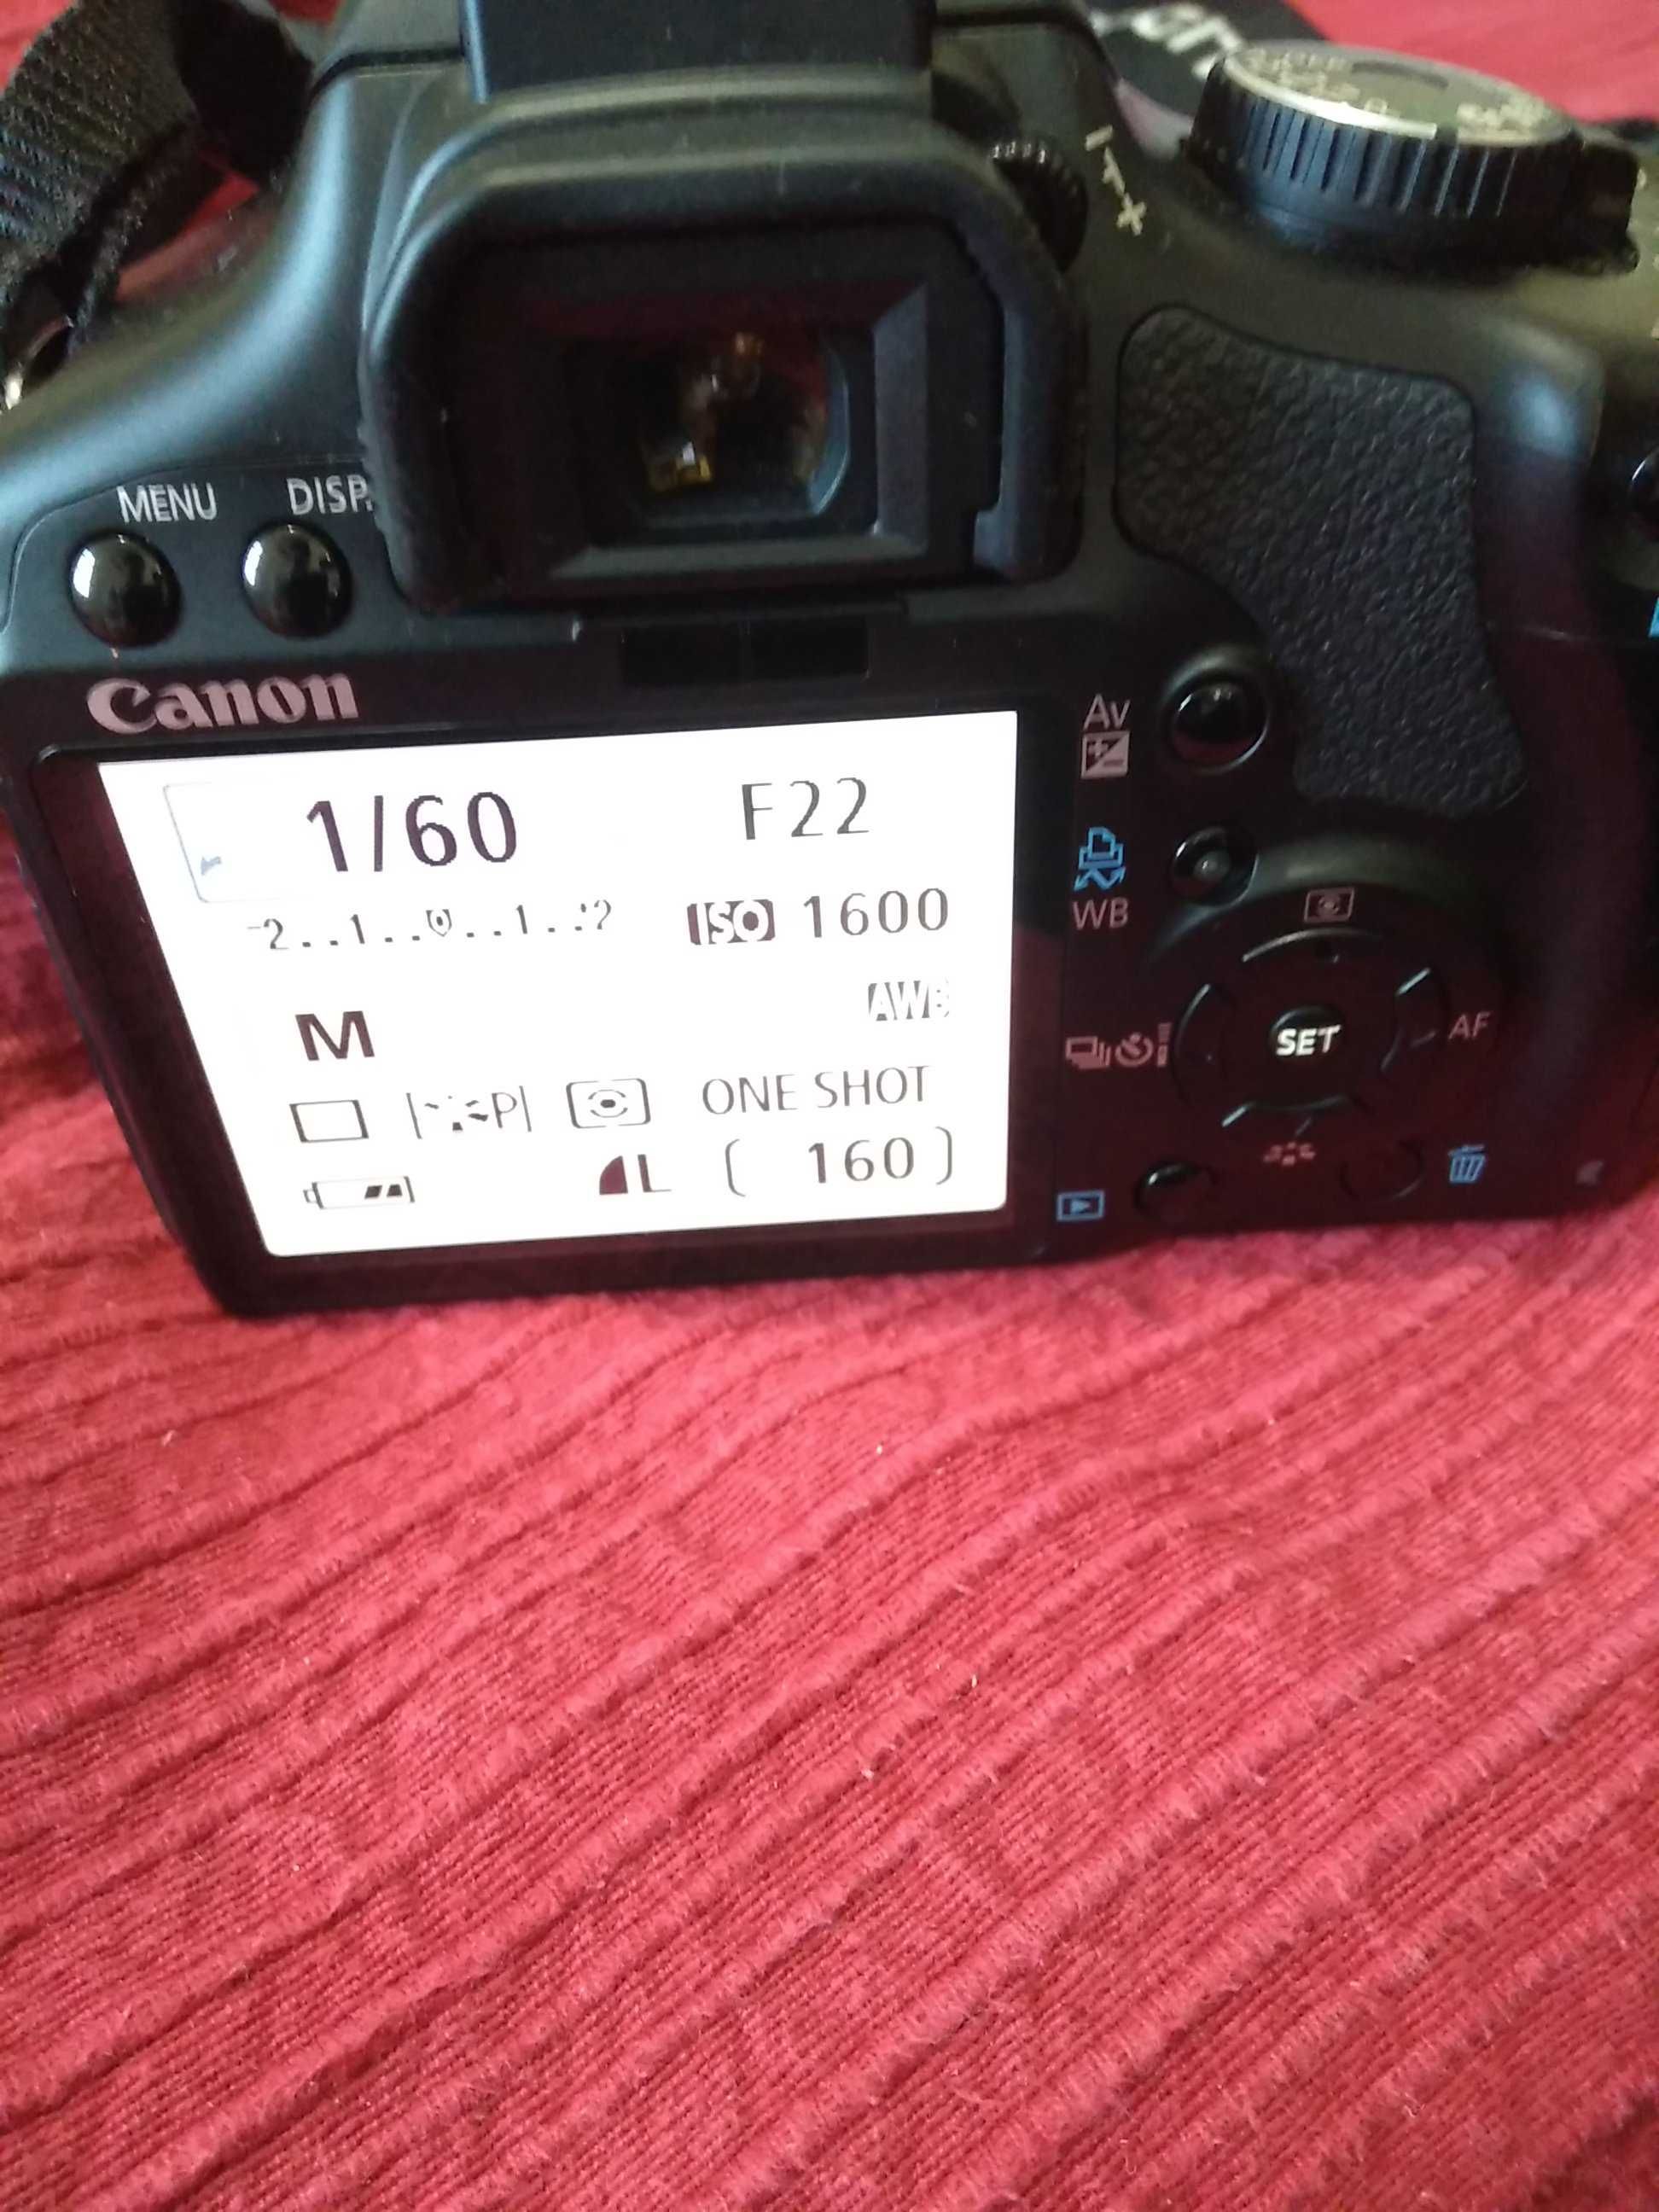 Canon 450D + Canon EFS 18-55mm + bateria + carregador